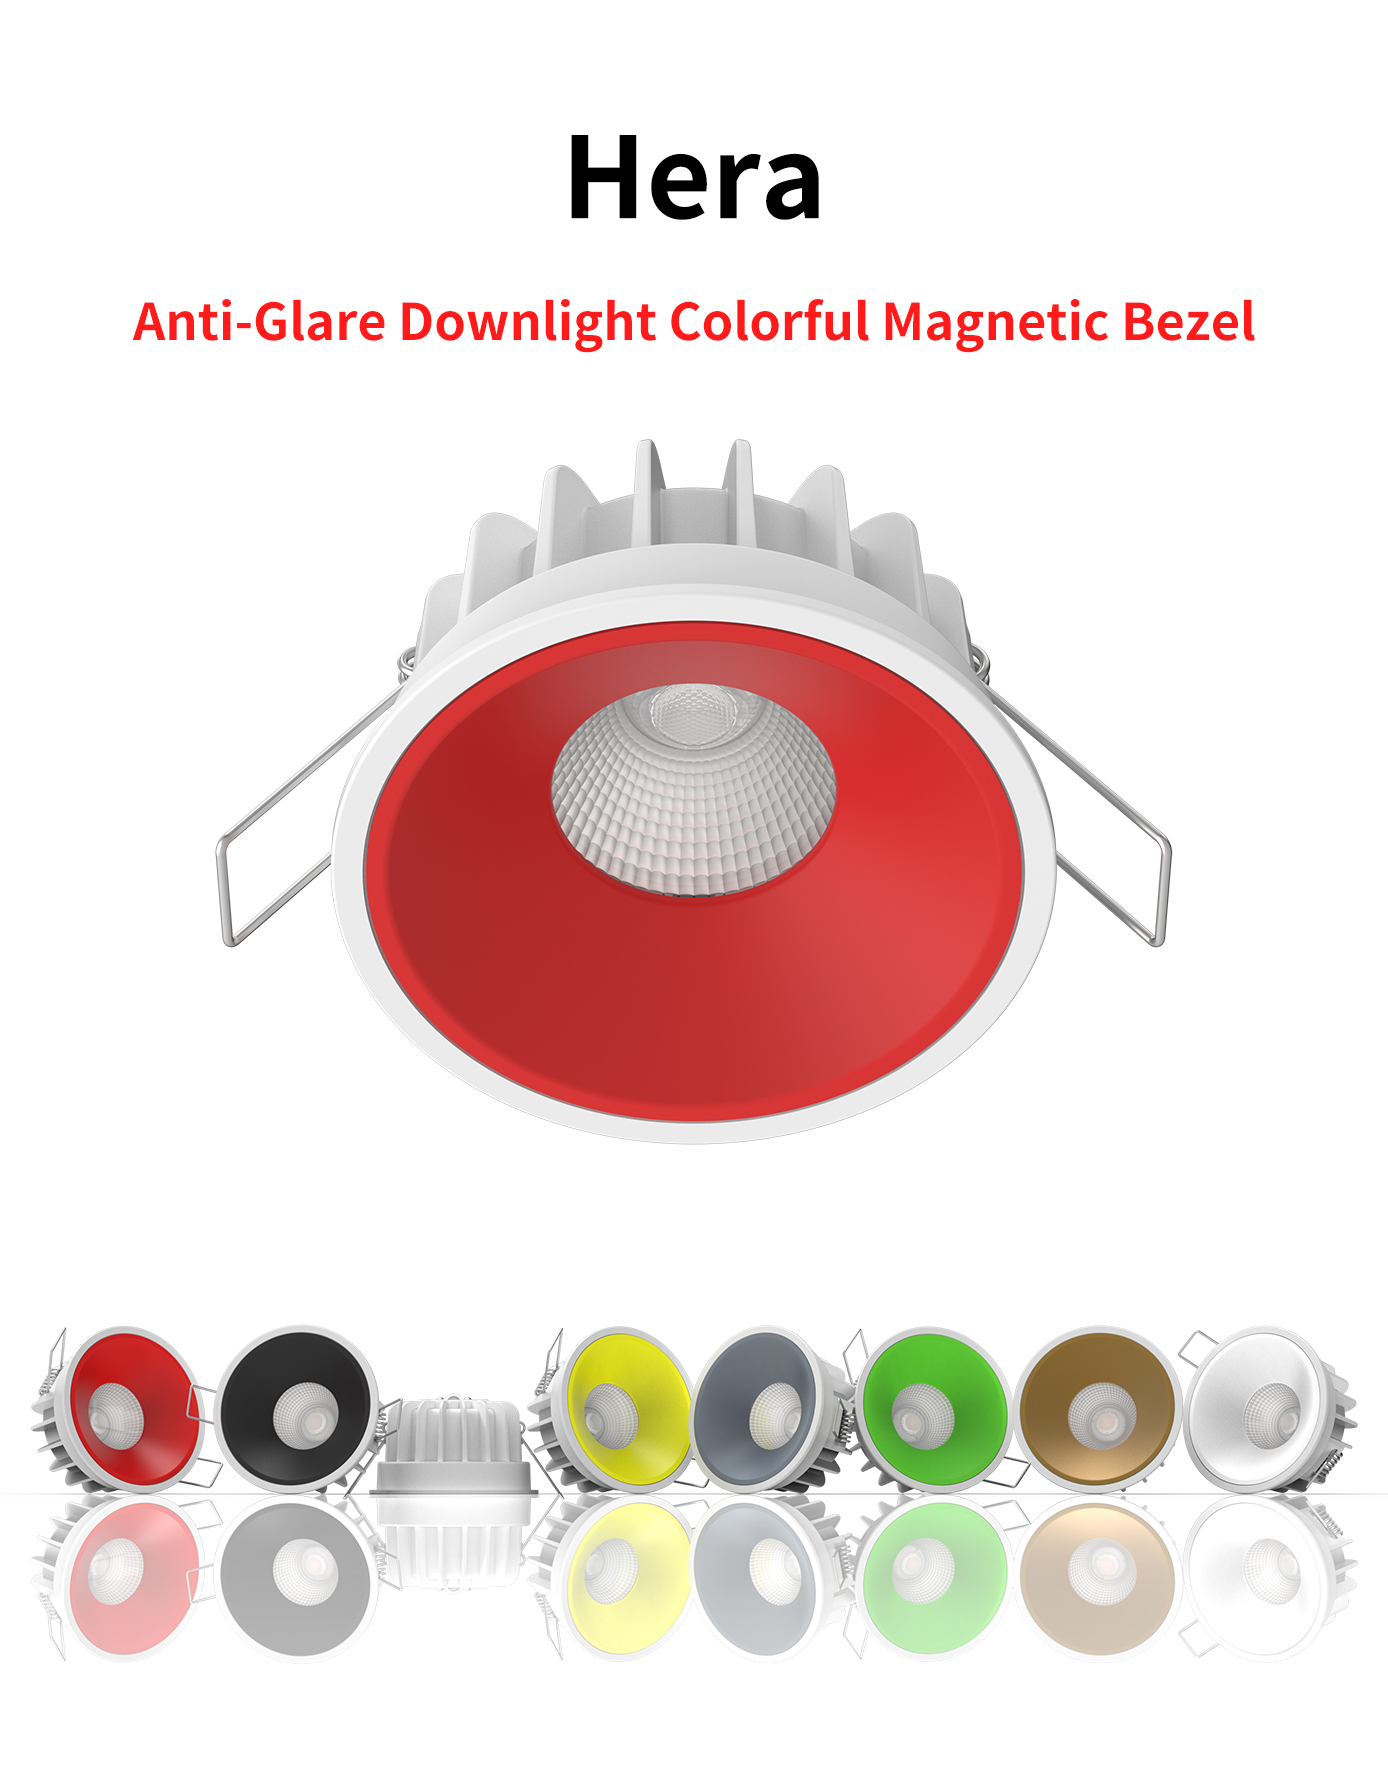 Downlight LED antirreflexo Hera 8W com moldura magnética colorida